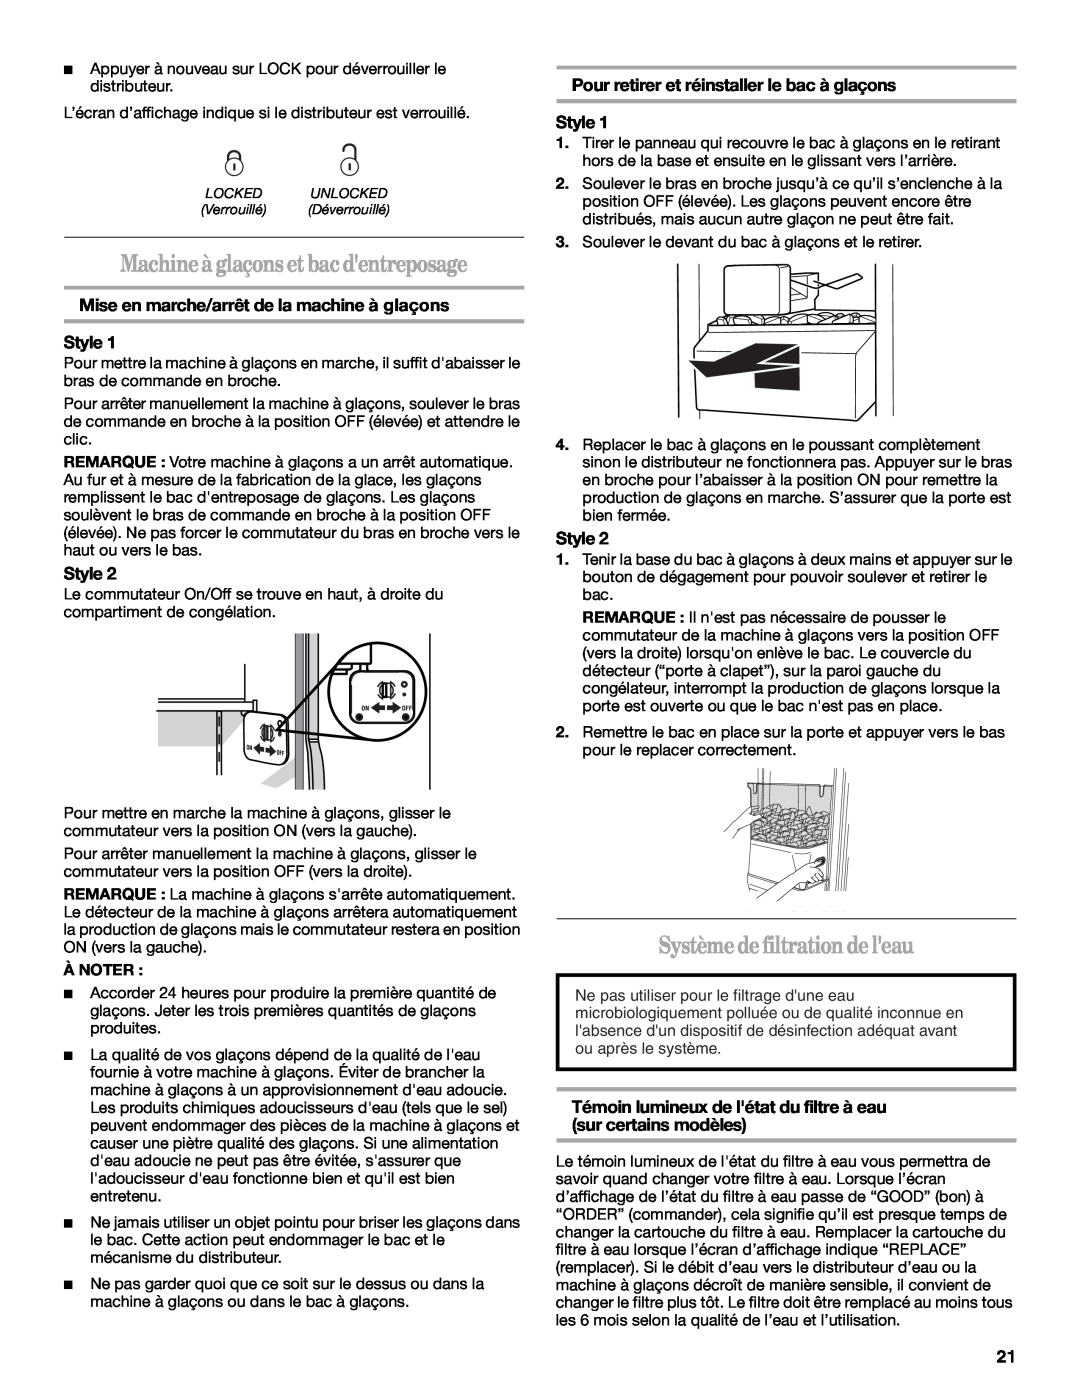 Whirlpool ED2KHAXV installation instructions Machine à glaçons et bac dentreposage, Système defiltrationde leau, Style 